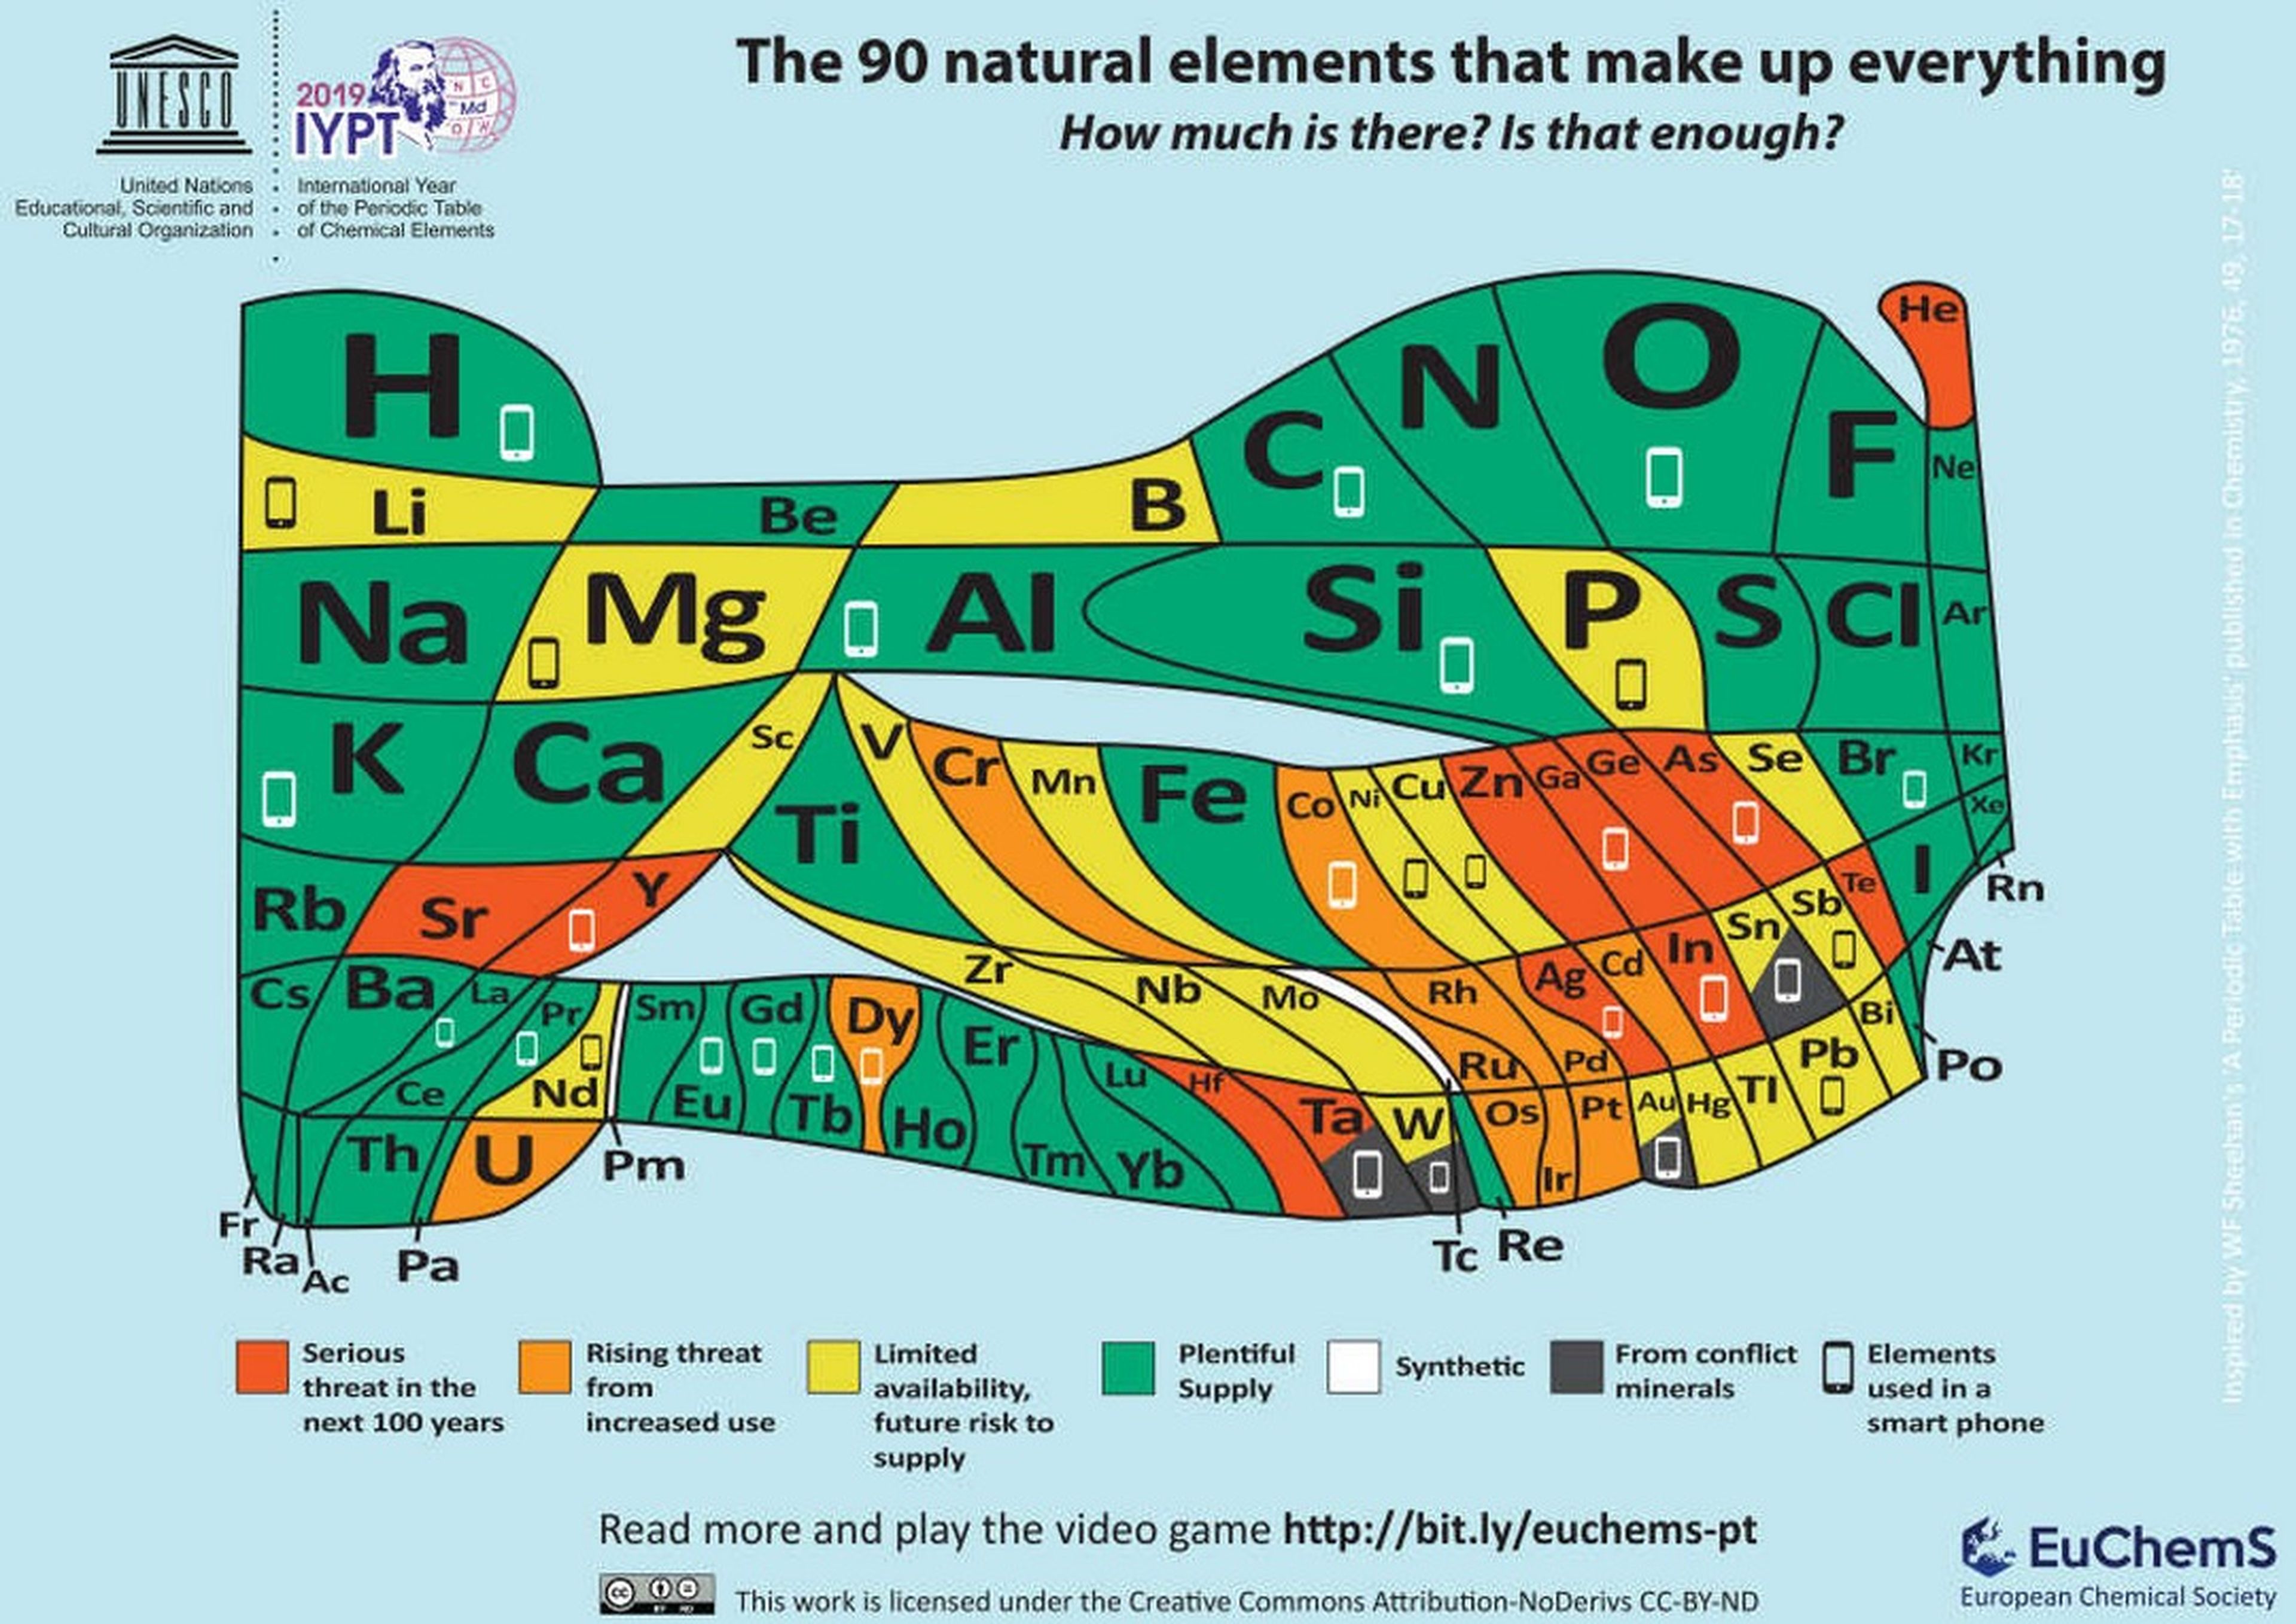 Un móvil está formado por 30 elementos químicos, y 17 de ellos son escasos o contaminan